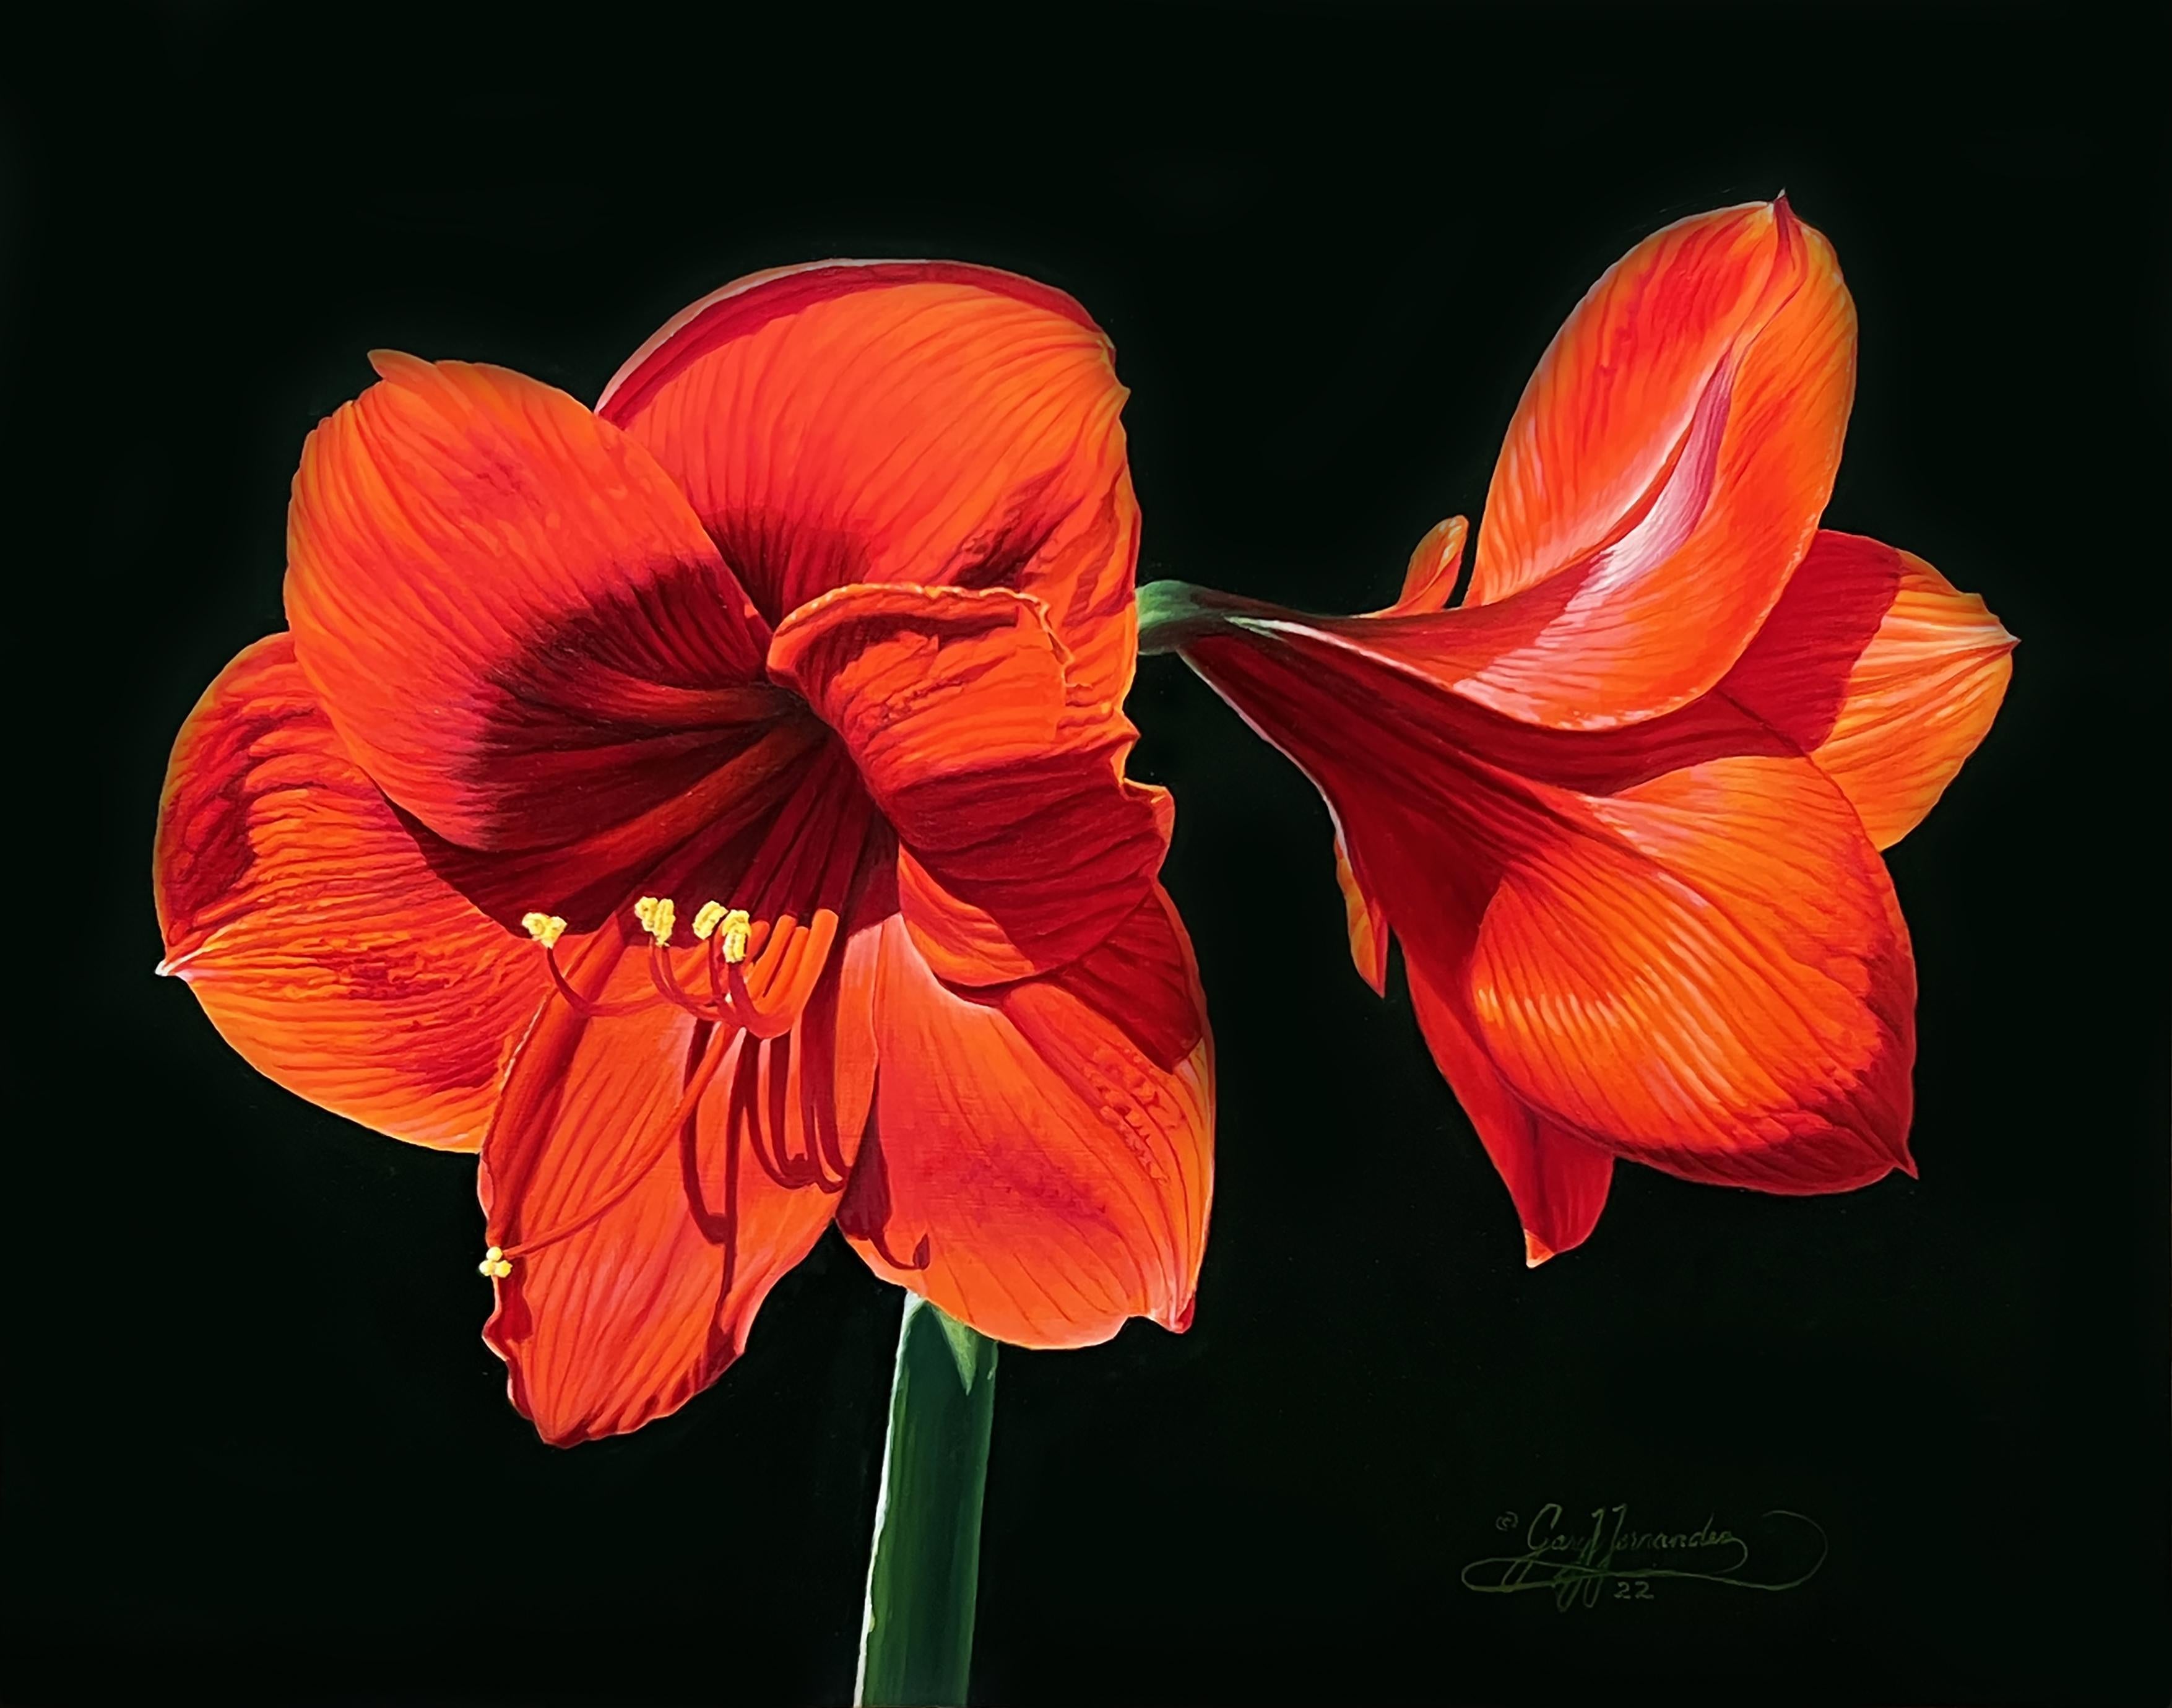 Amaryllis rouge, artiste réaliste américain, peinture florale, représentative, encadrée